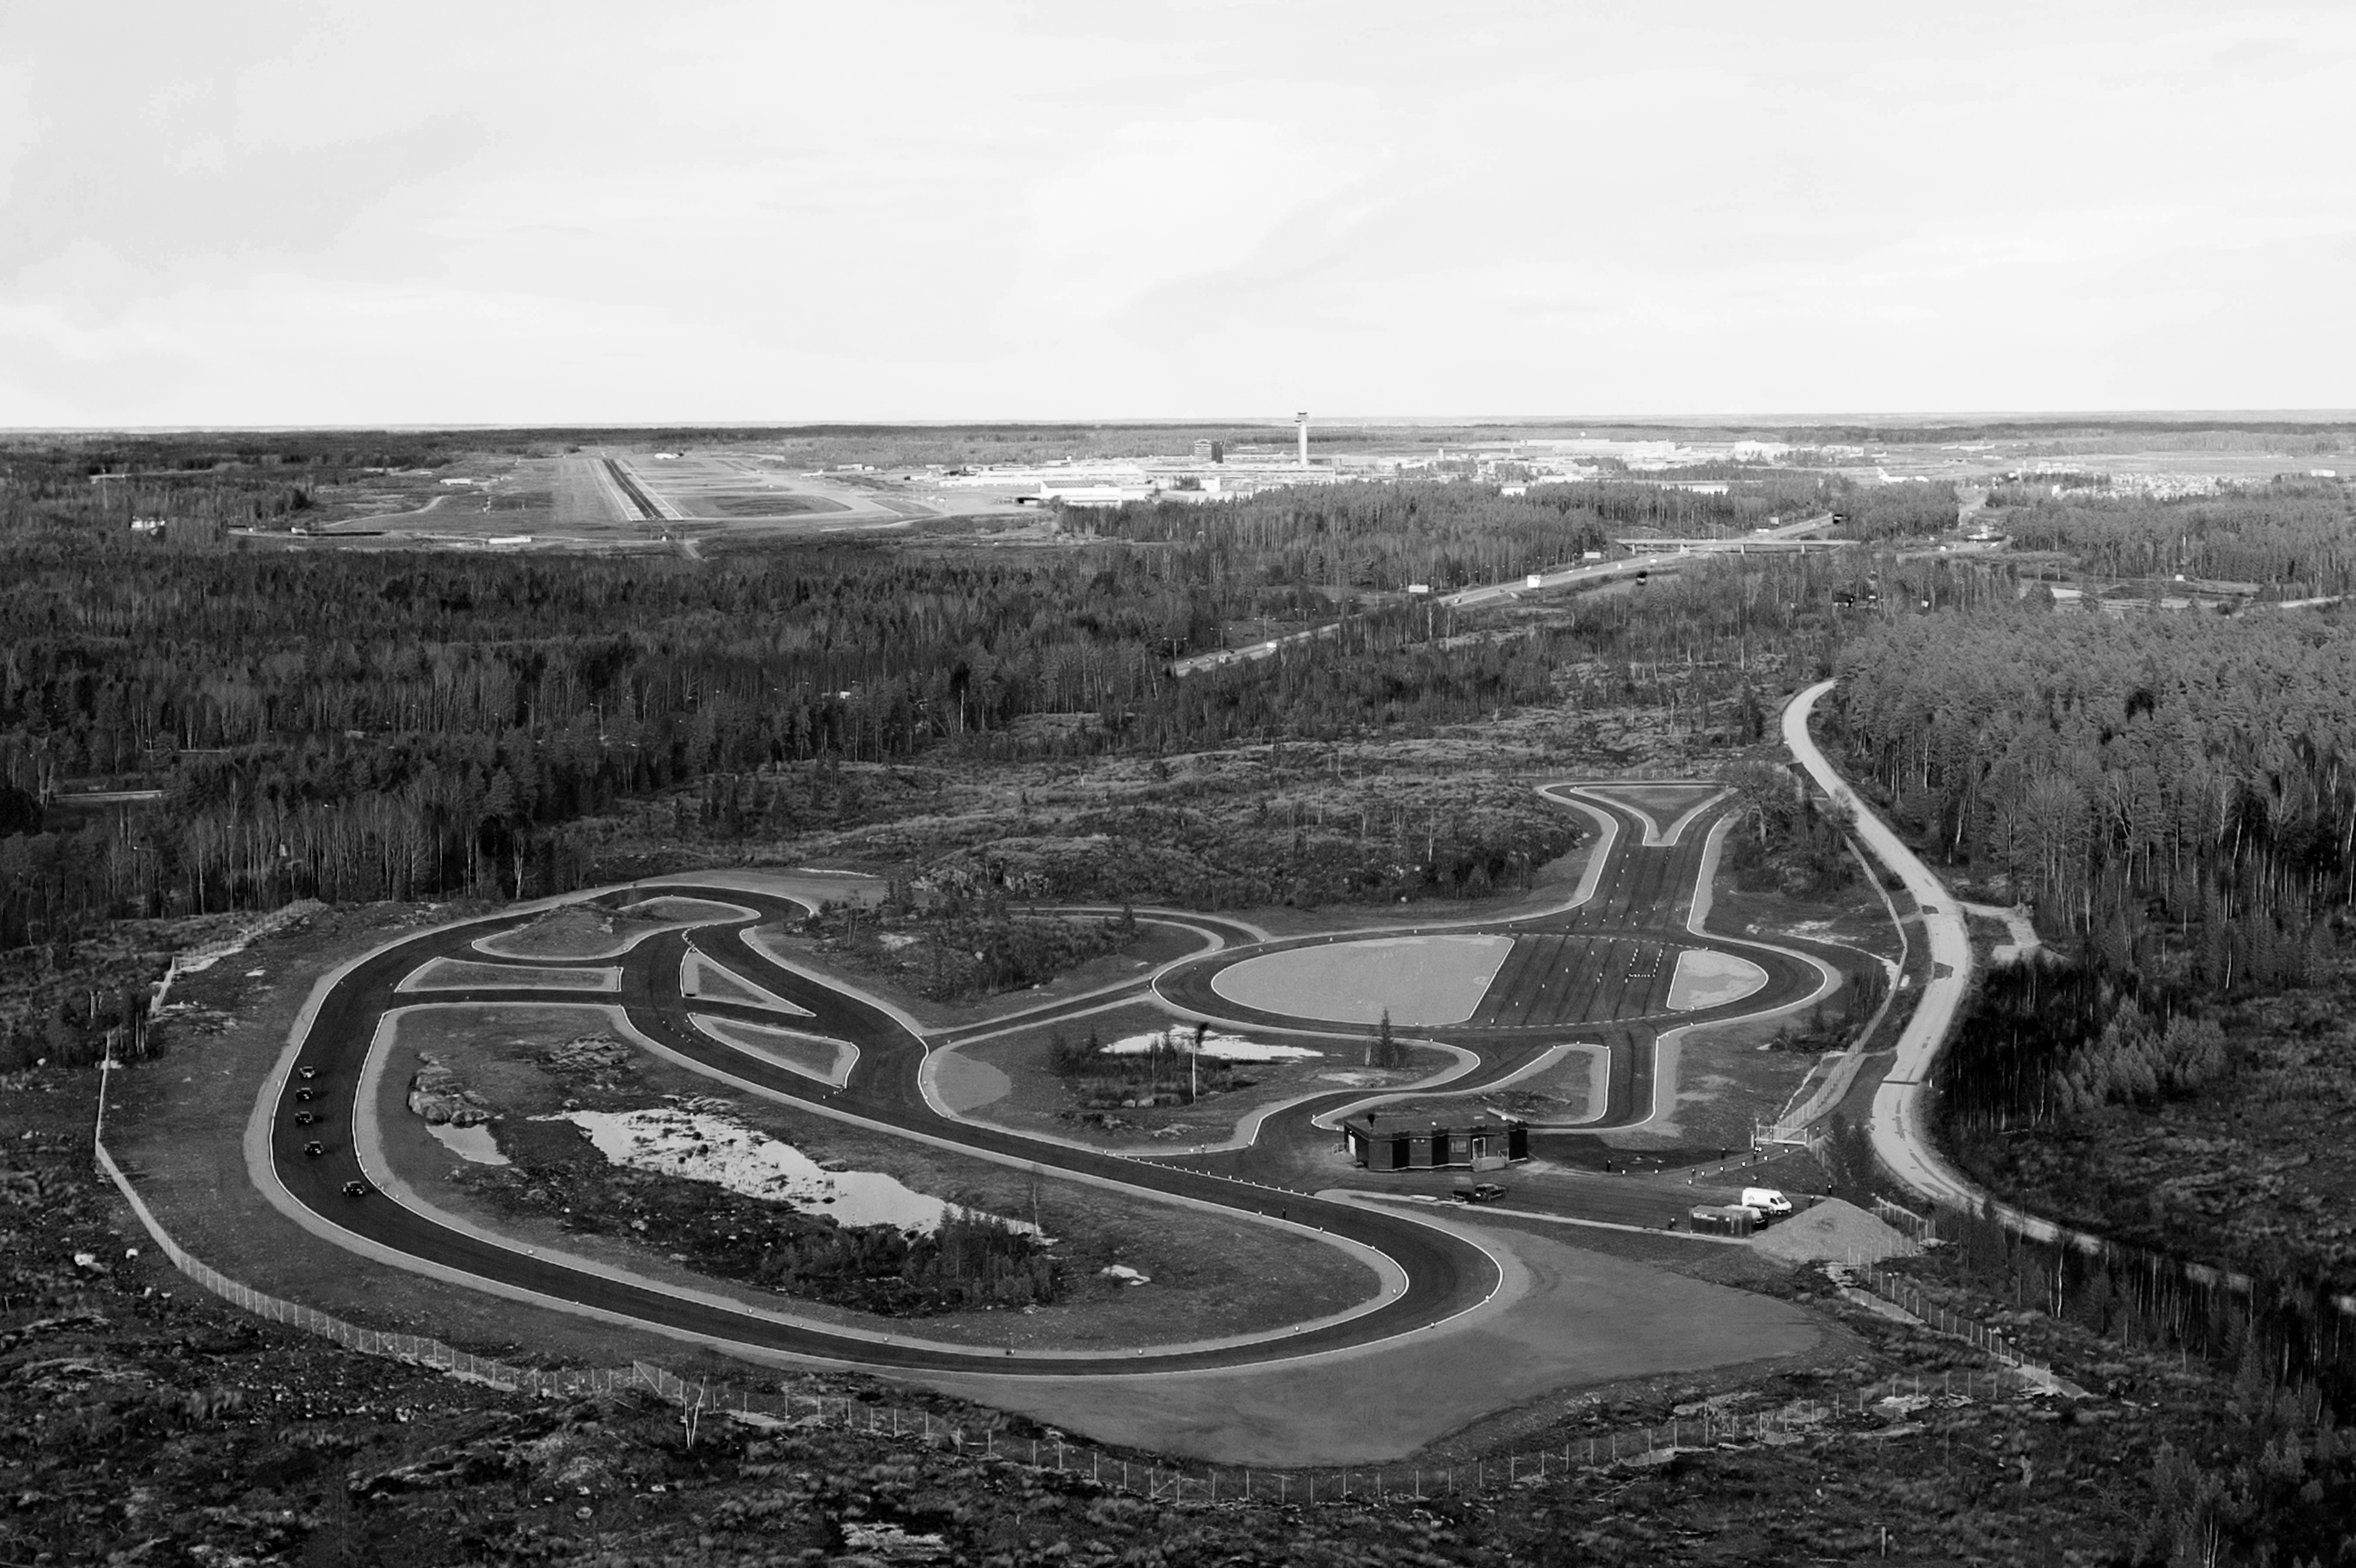 Vy över DRIVELAB Test Track 1 med Arlanda flygplats i bakgrunden. Nya DRIVELAB Test Track Terrain kommer placeras i direkt anslutning till Test Track 1.